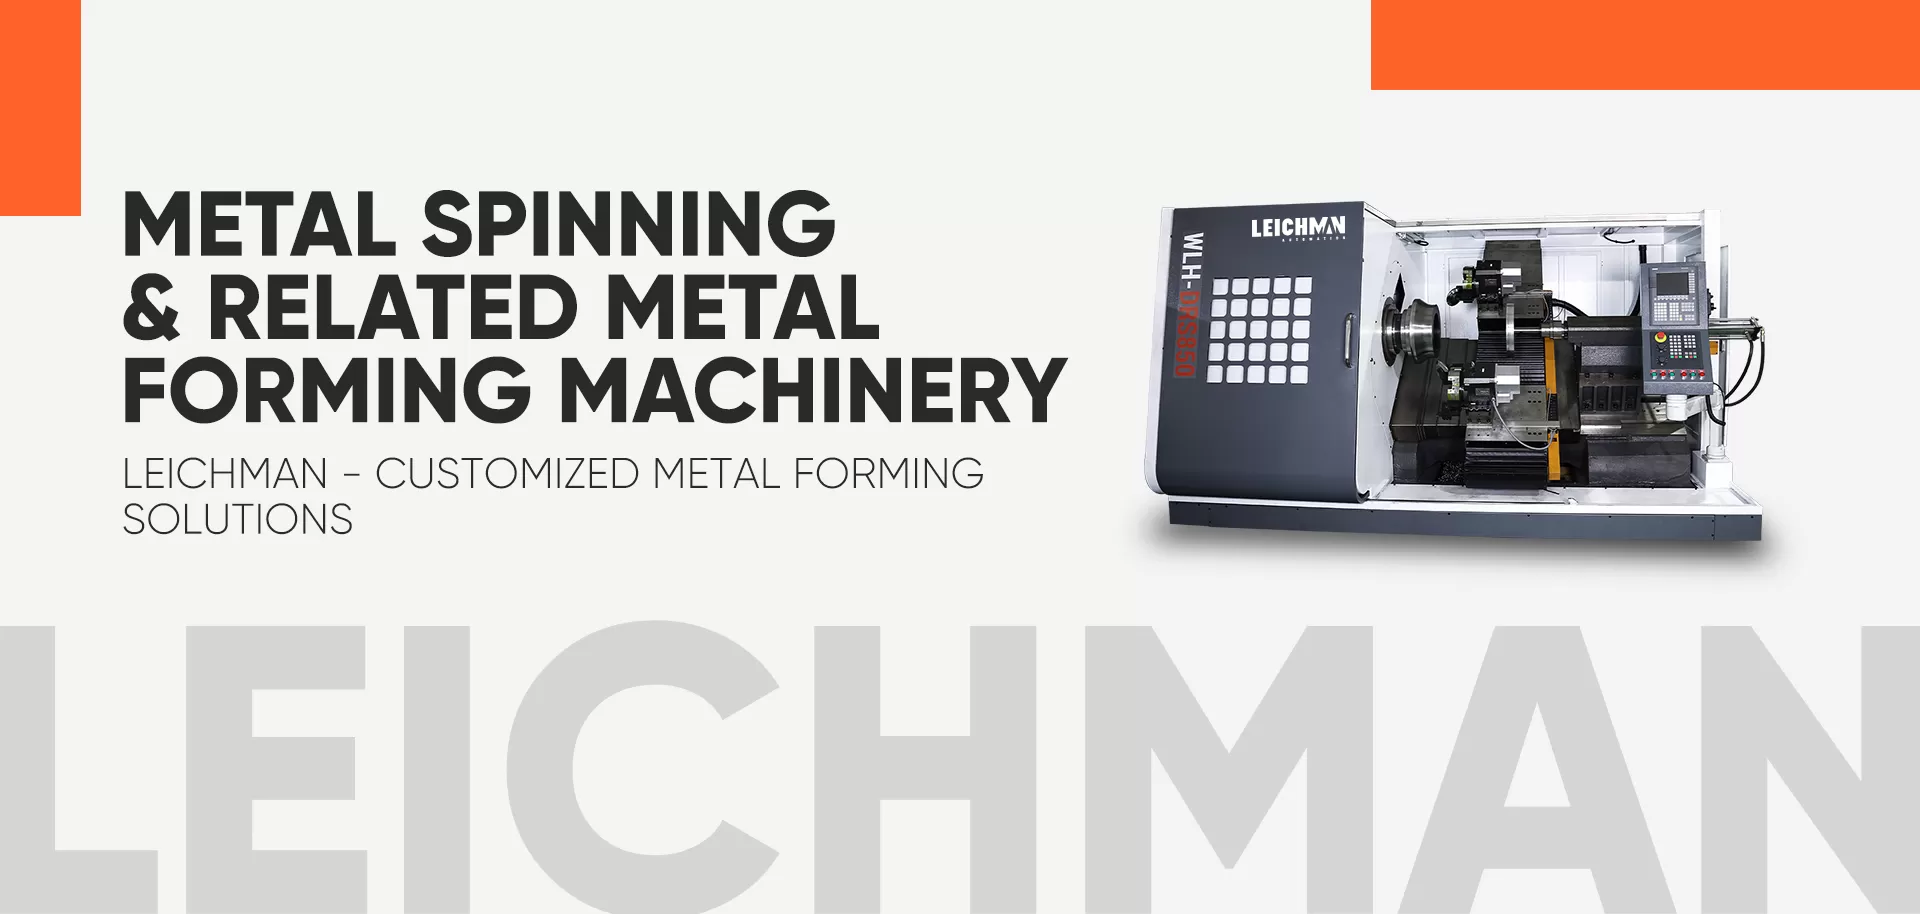 CNC Metal Spinning Machine